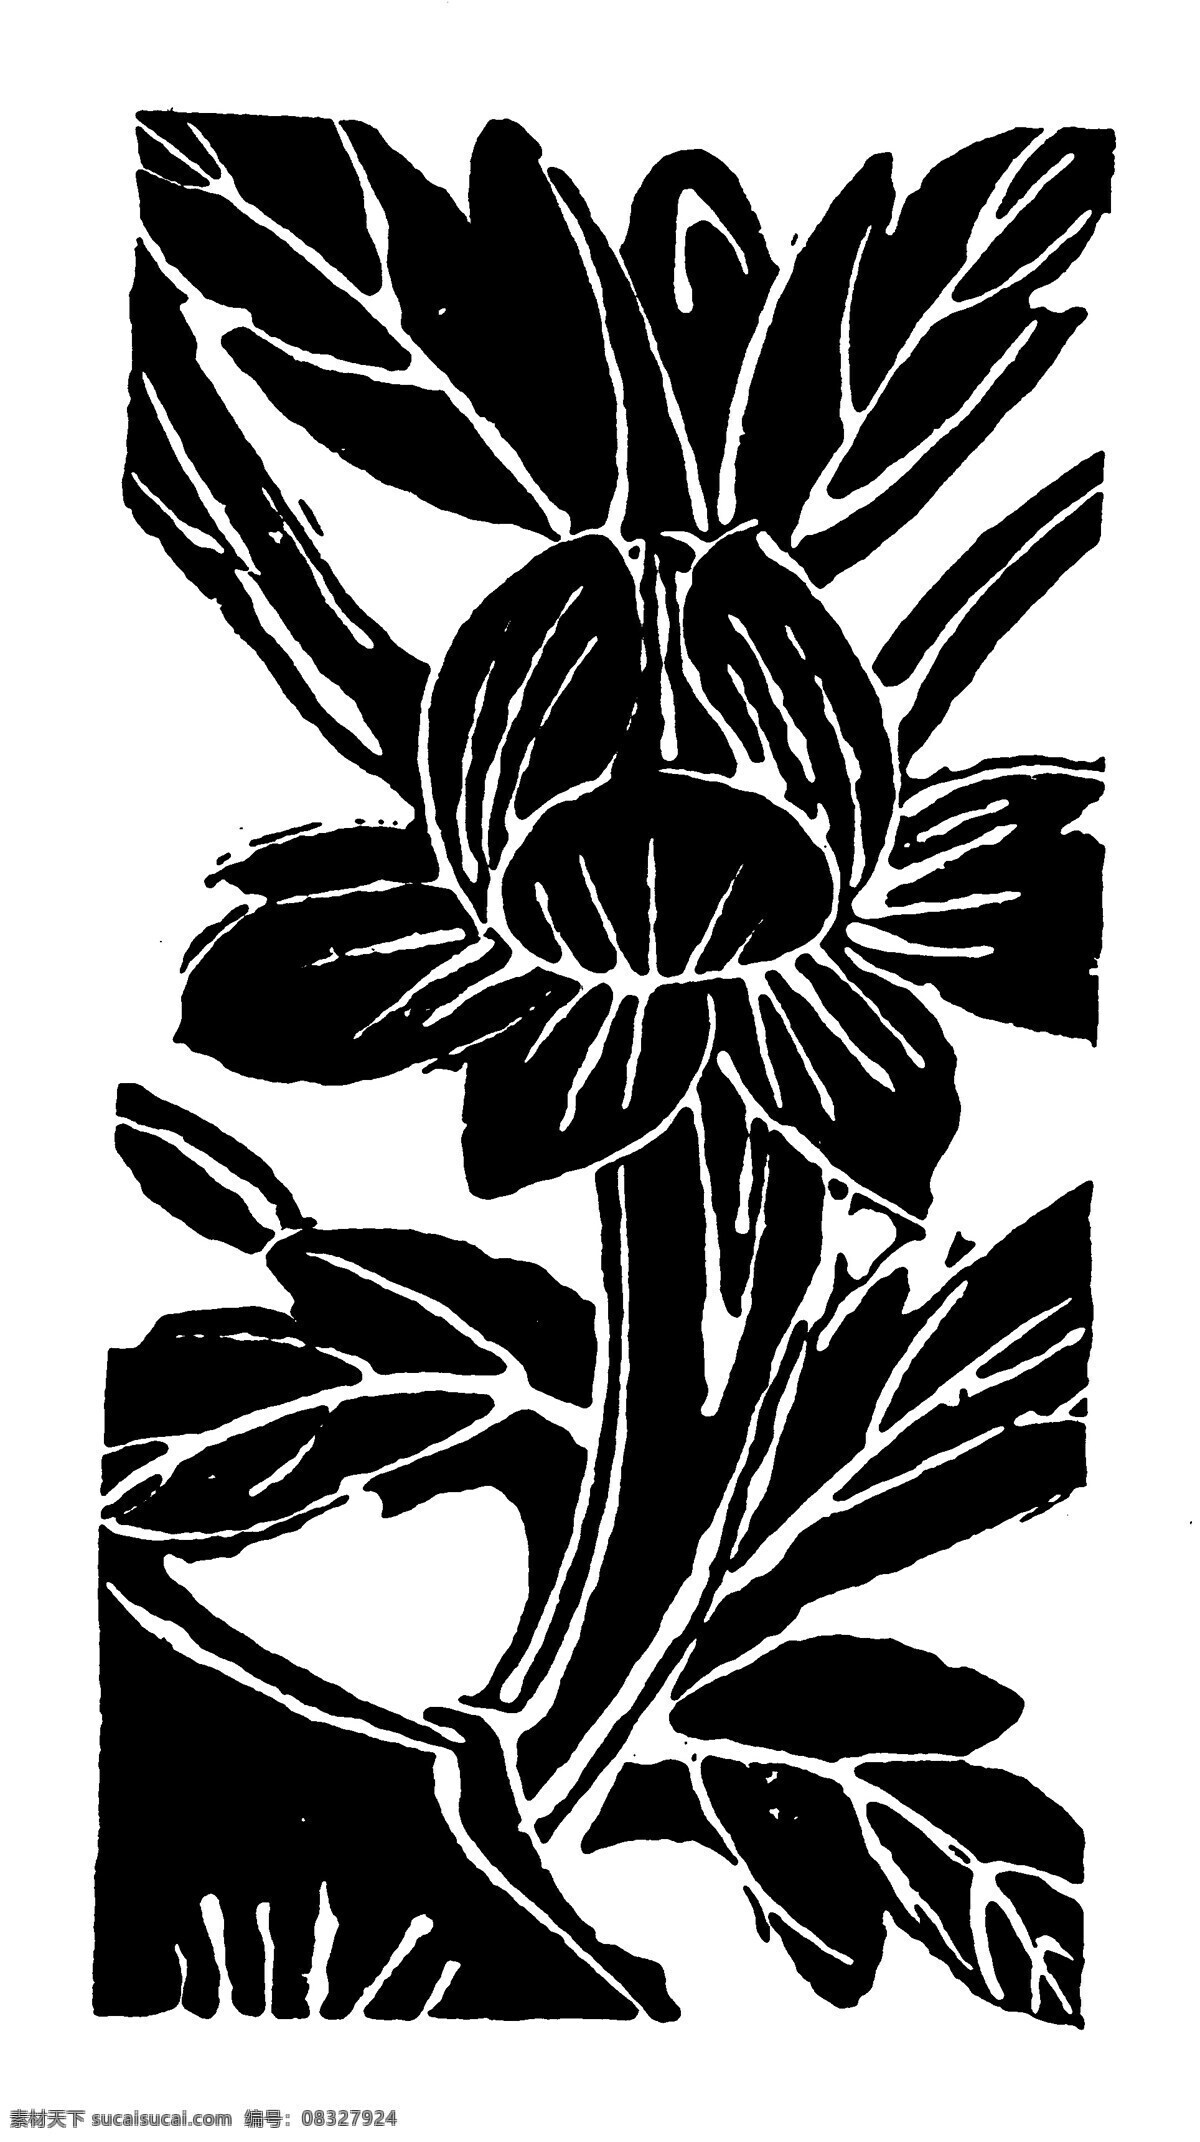 花鸟图案 元明时代图案 中国 传统 图案 设计素材 装饰图案 书画美术 黑色